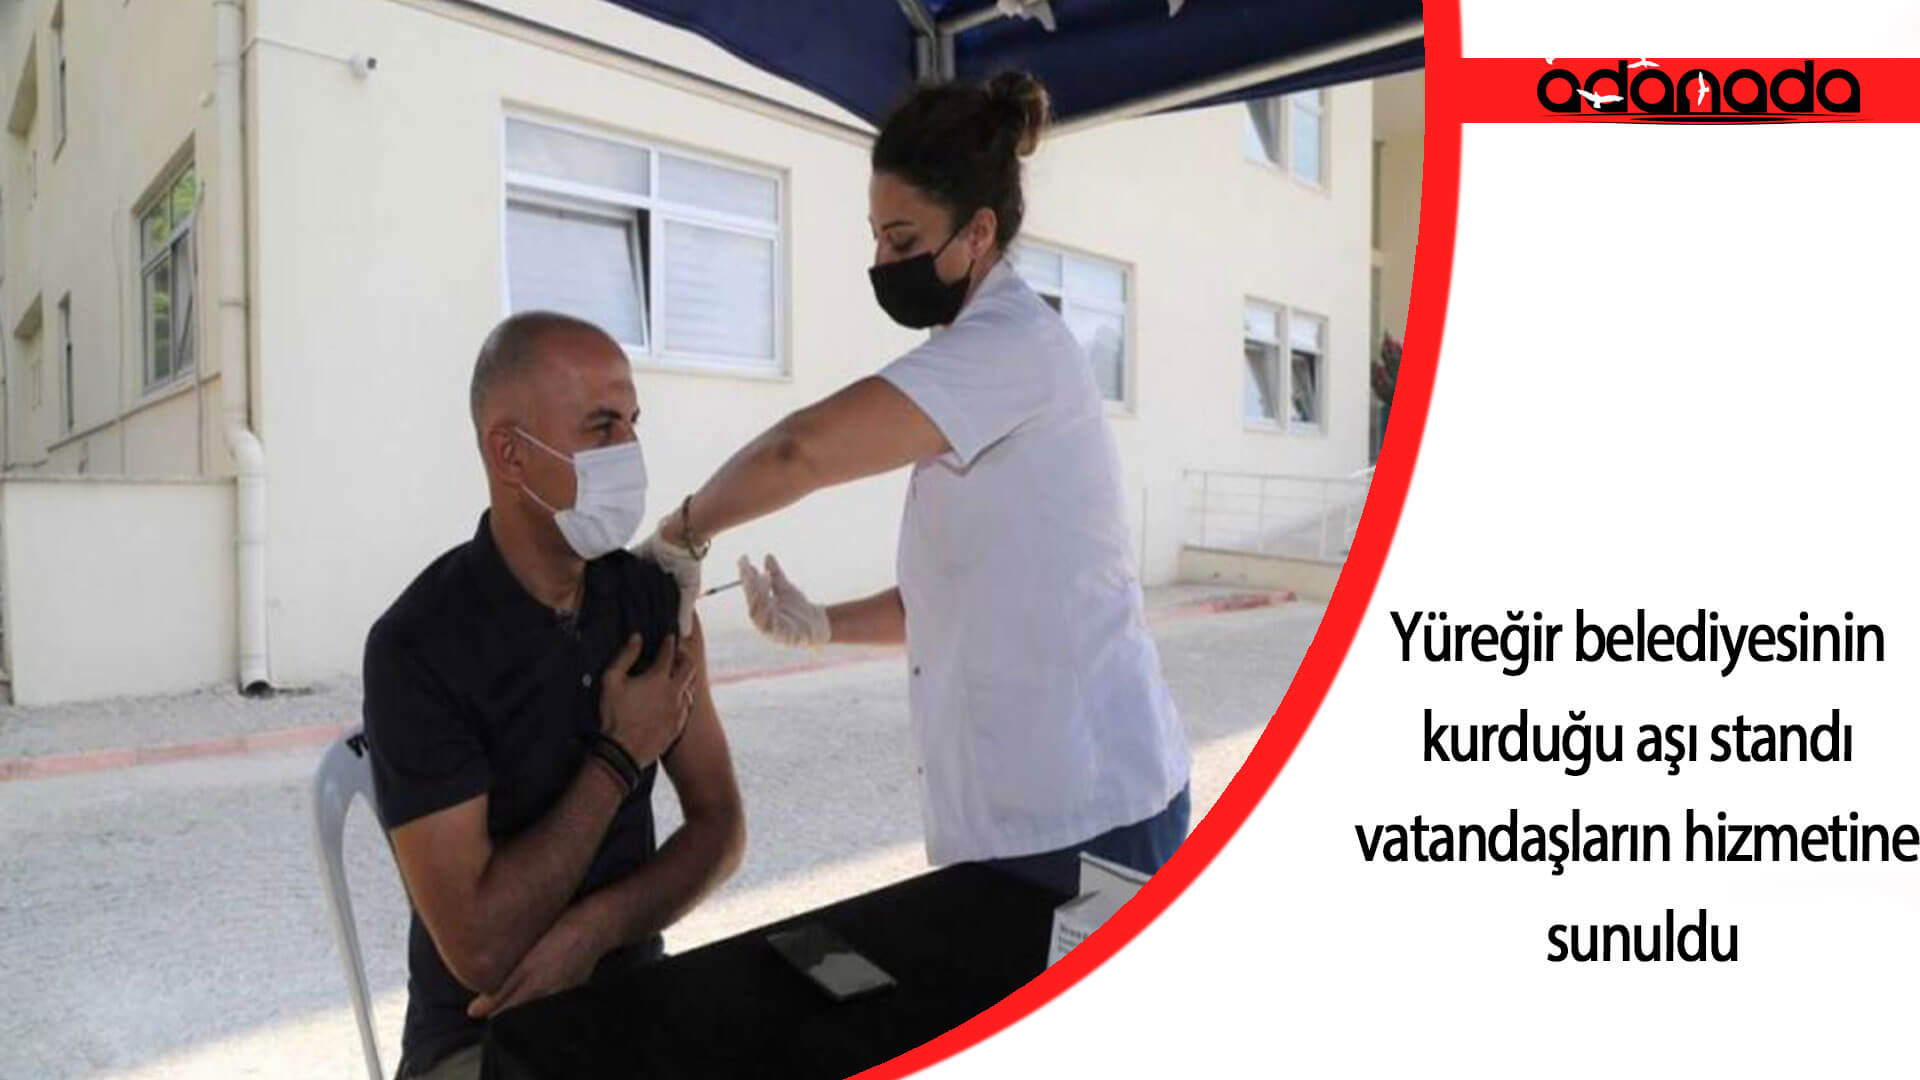 Adana’da Yüreğir belediyesinin kurduğu aşı standı vatandaşların hizmetine sunuldu